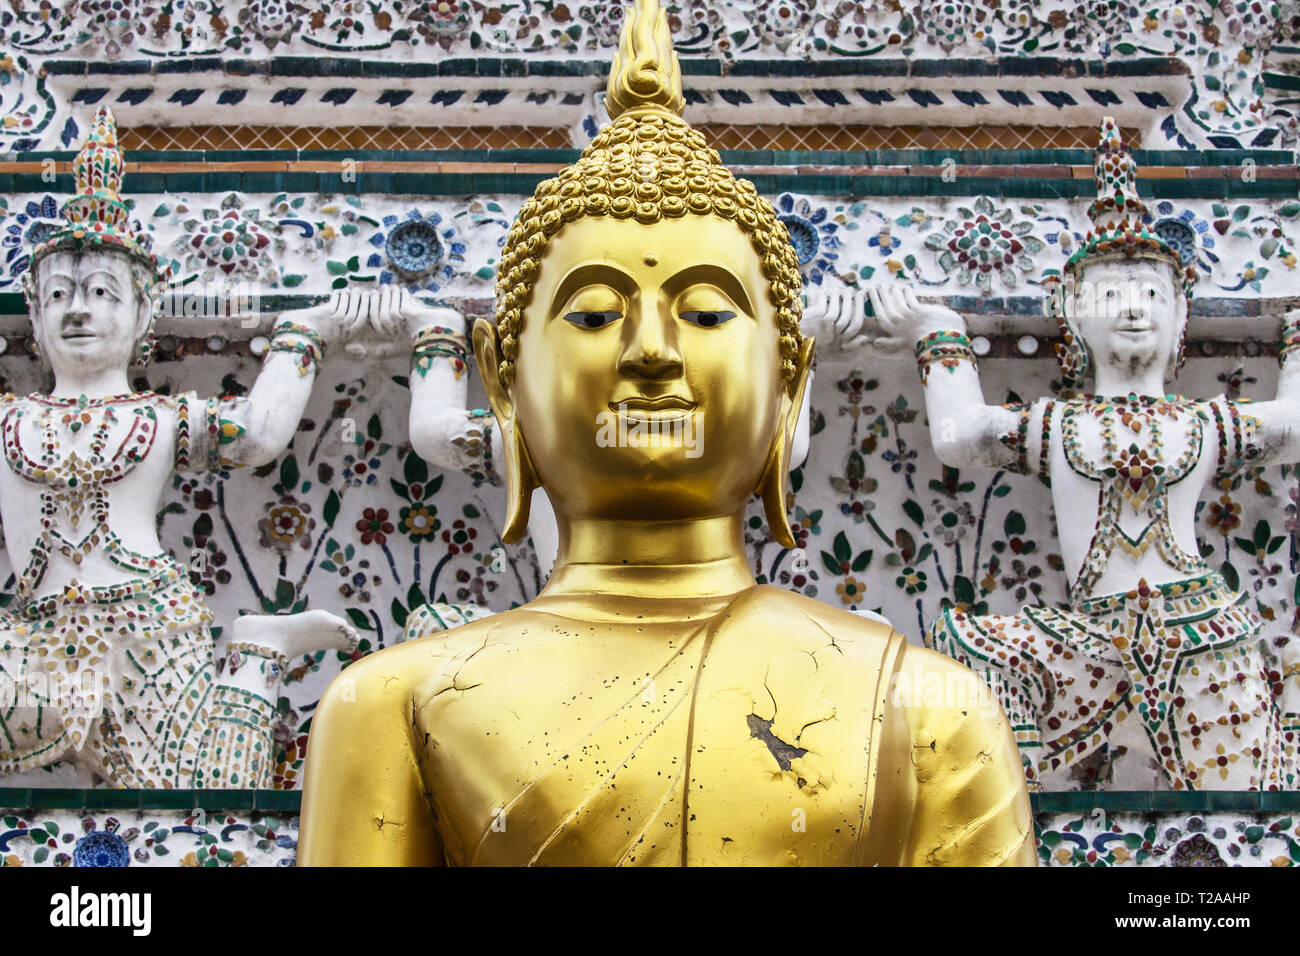 Bouddha dans le Prang Central avant de Wat Arun, Bangkok, Thaïlande. Banque D'Images